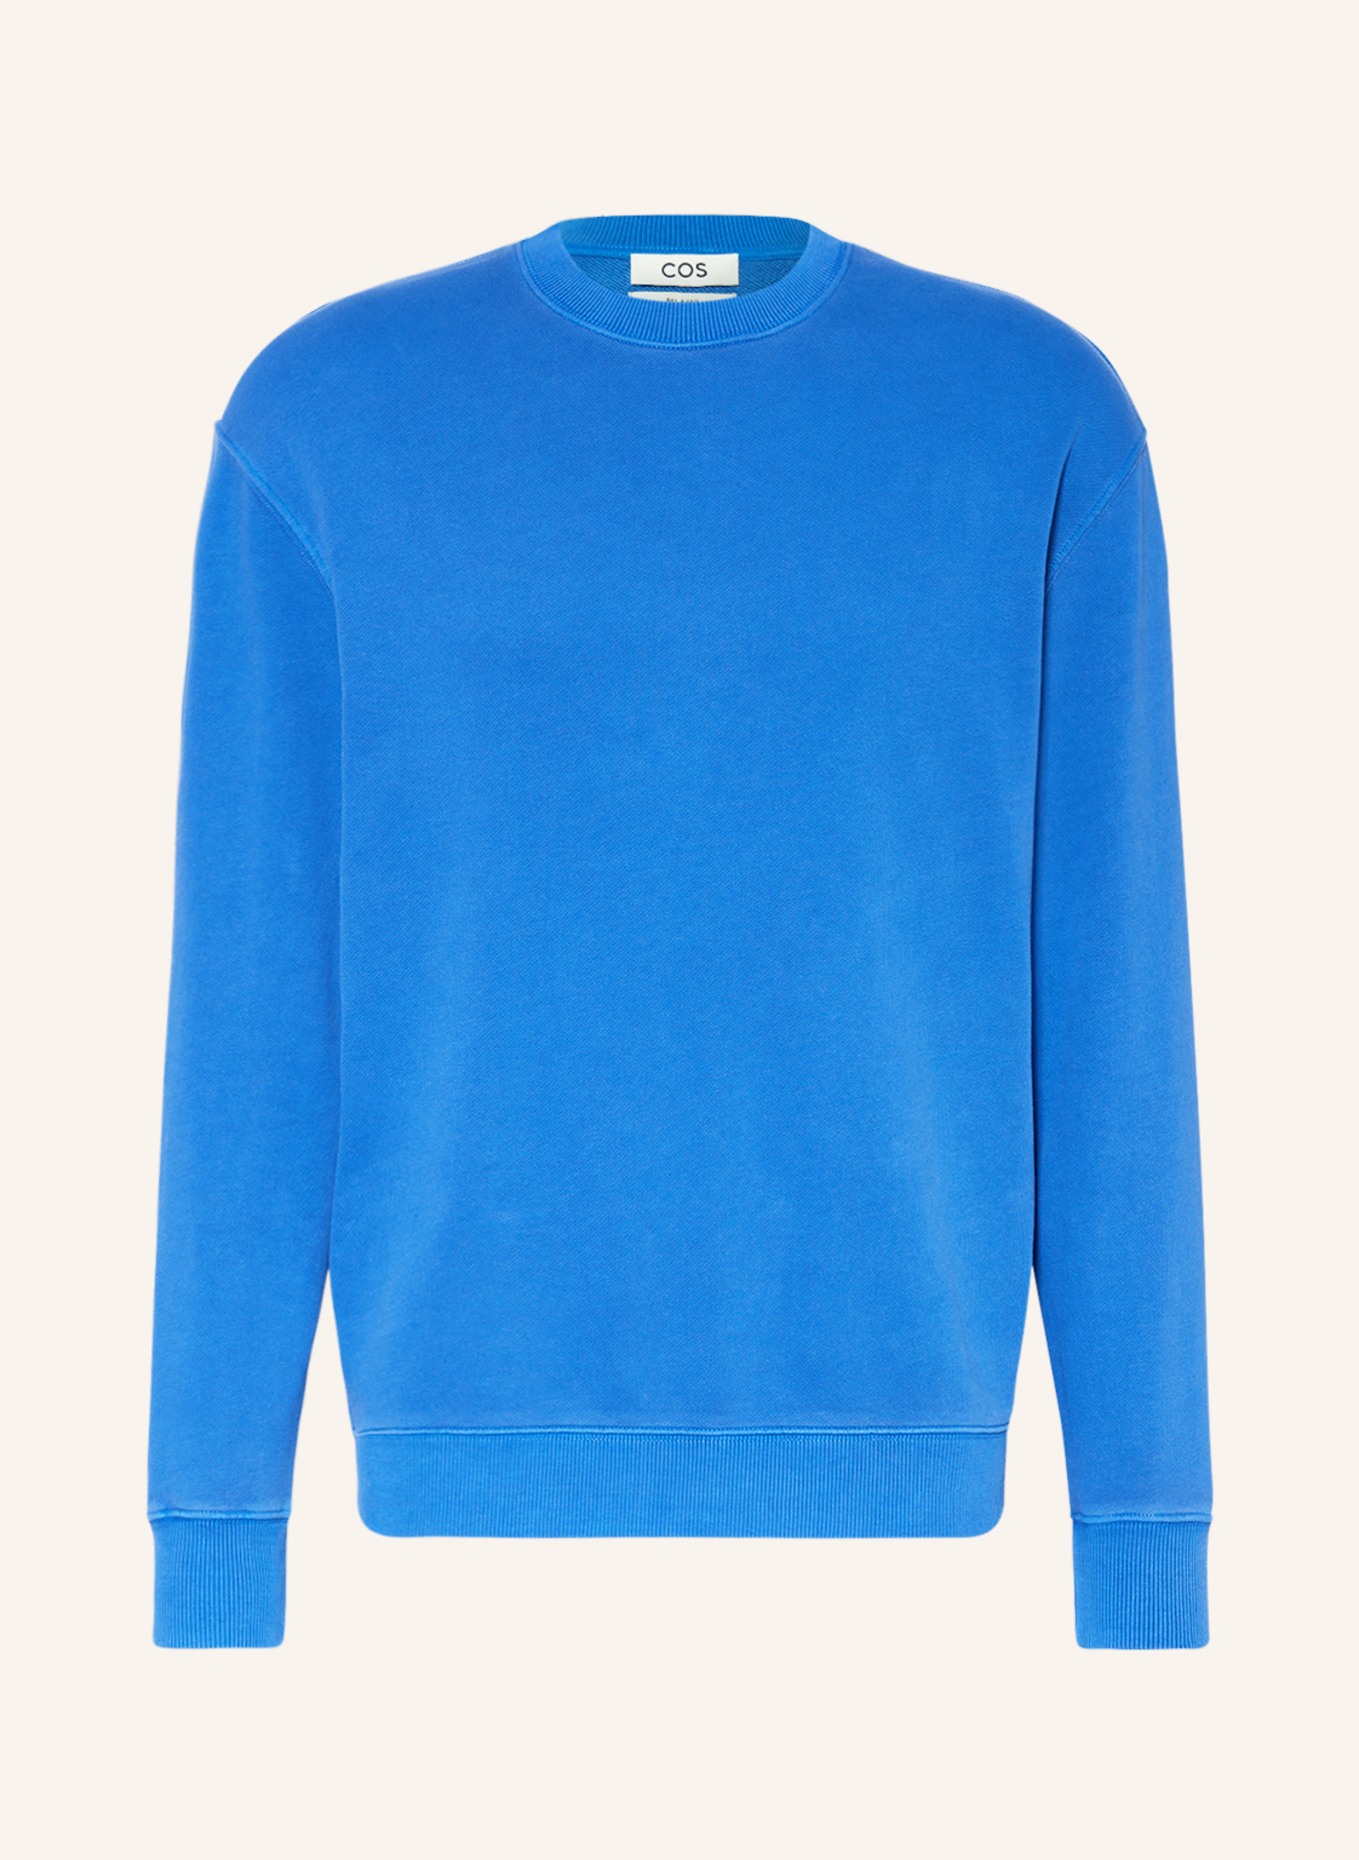 COS Sweatshirt, Color: BLUE (Image 1)